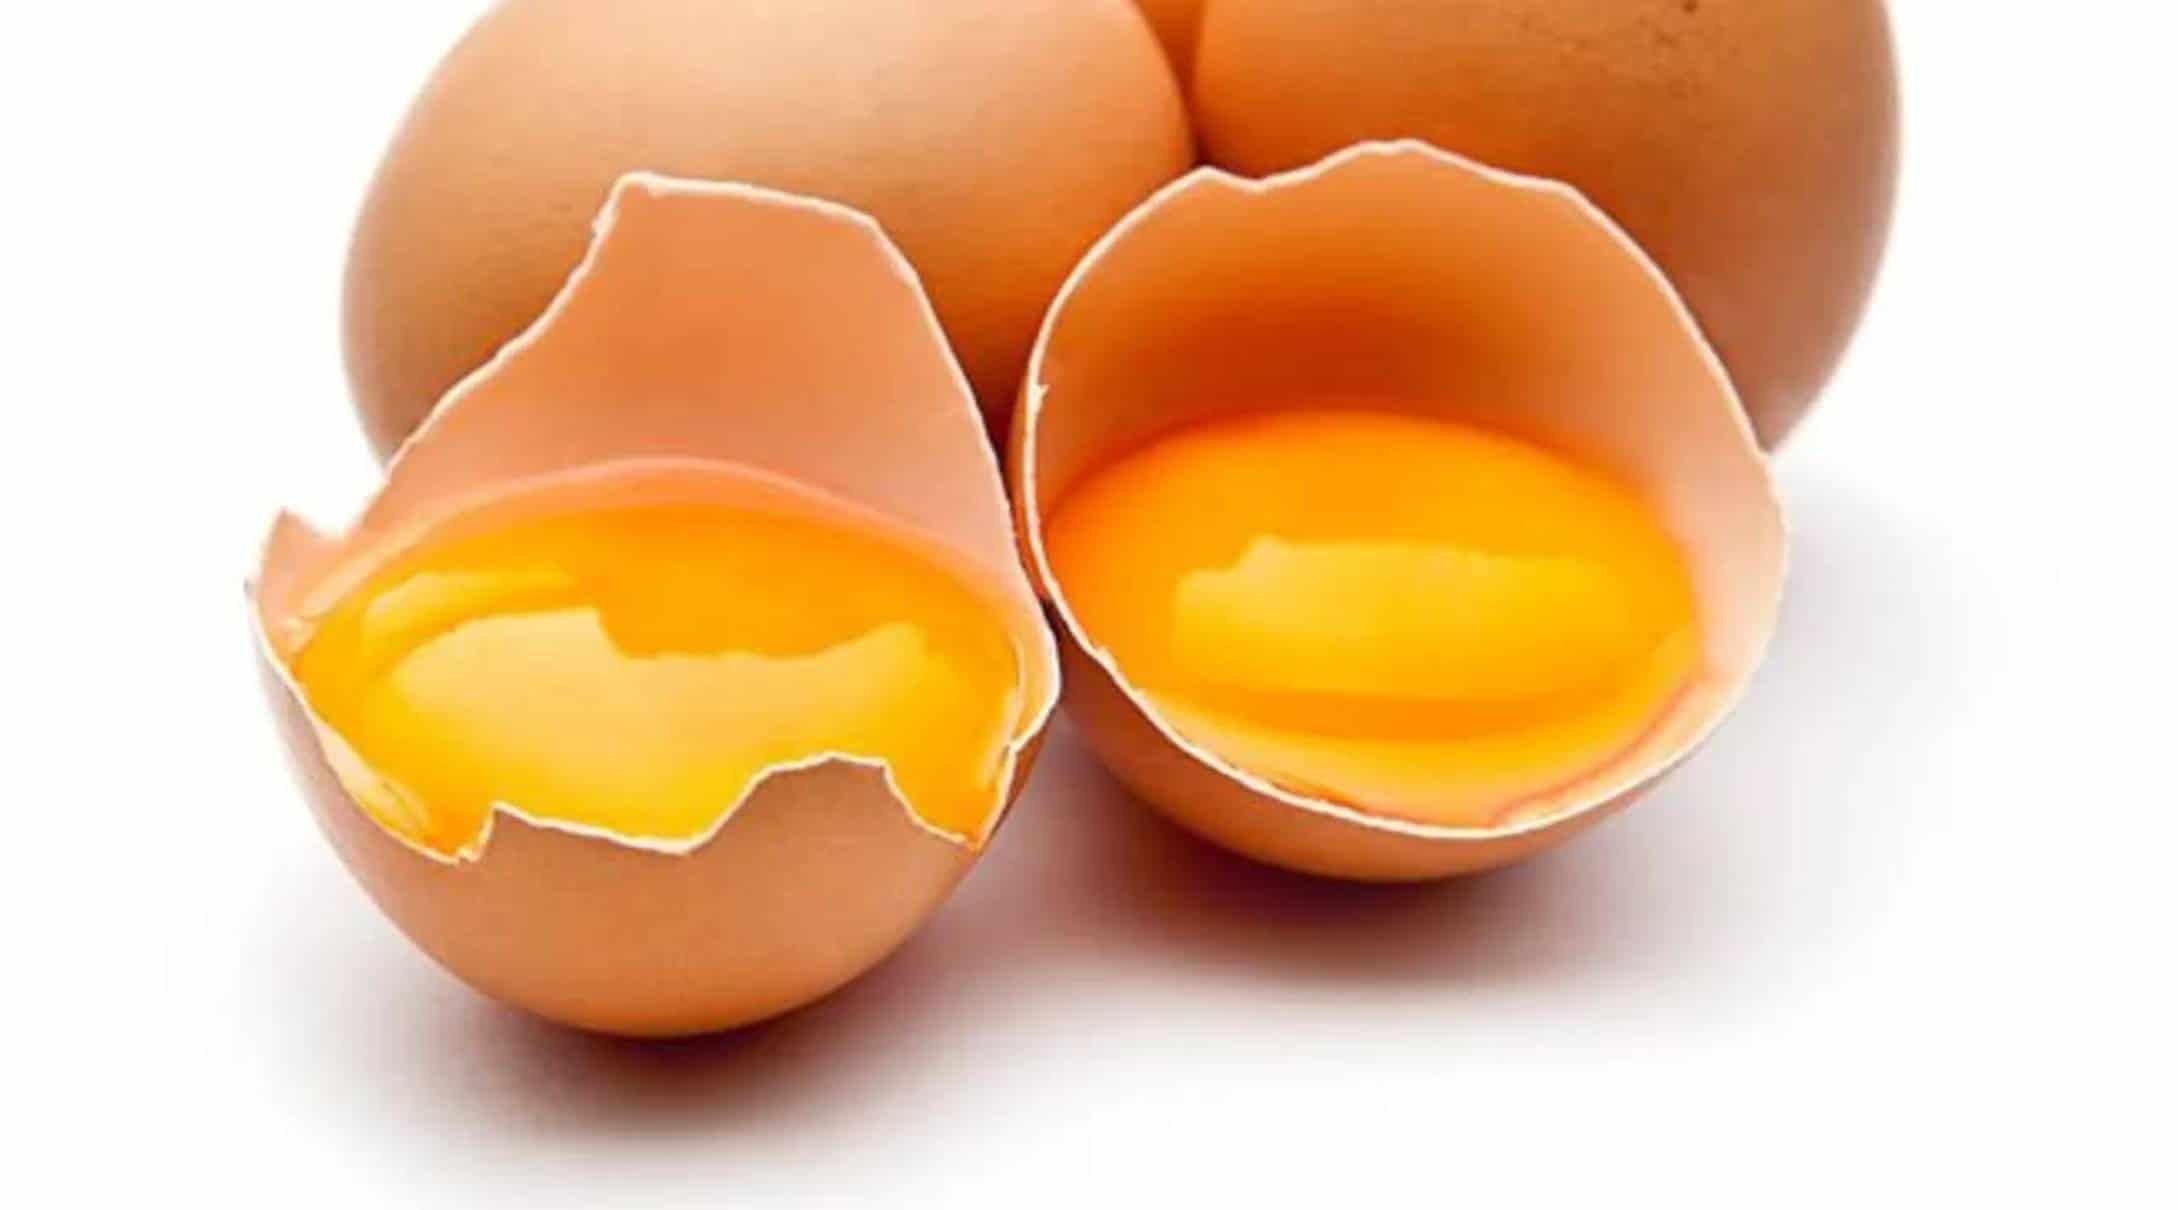 Descubra qual é a parte mais nutritiva do ovo